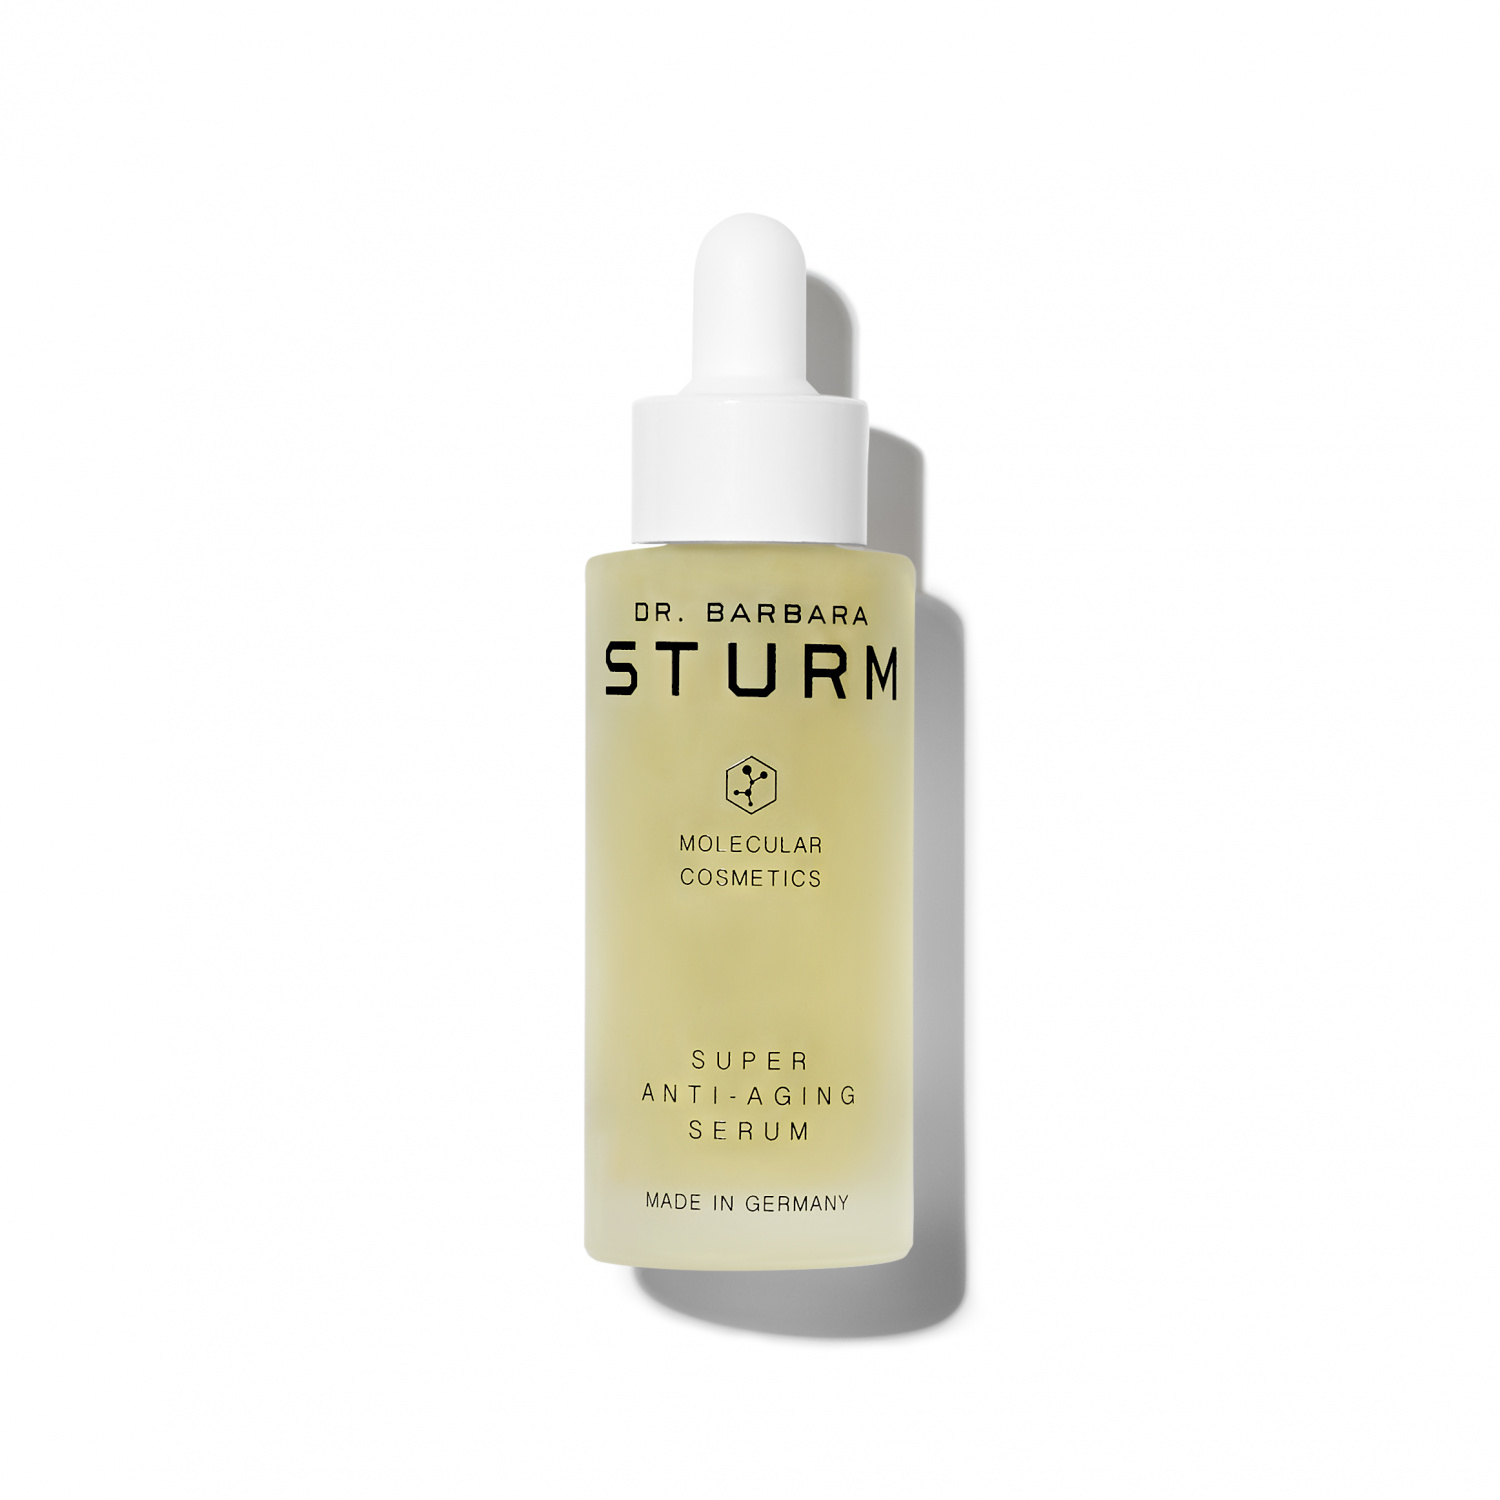 Dr. Barbara STURM Super Anti-aging Serum 30ml - интернет-магазин профессиональной косметики Spadream, изображение 37641